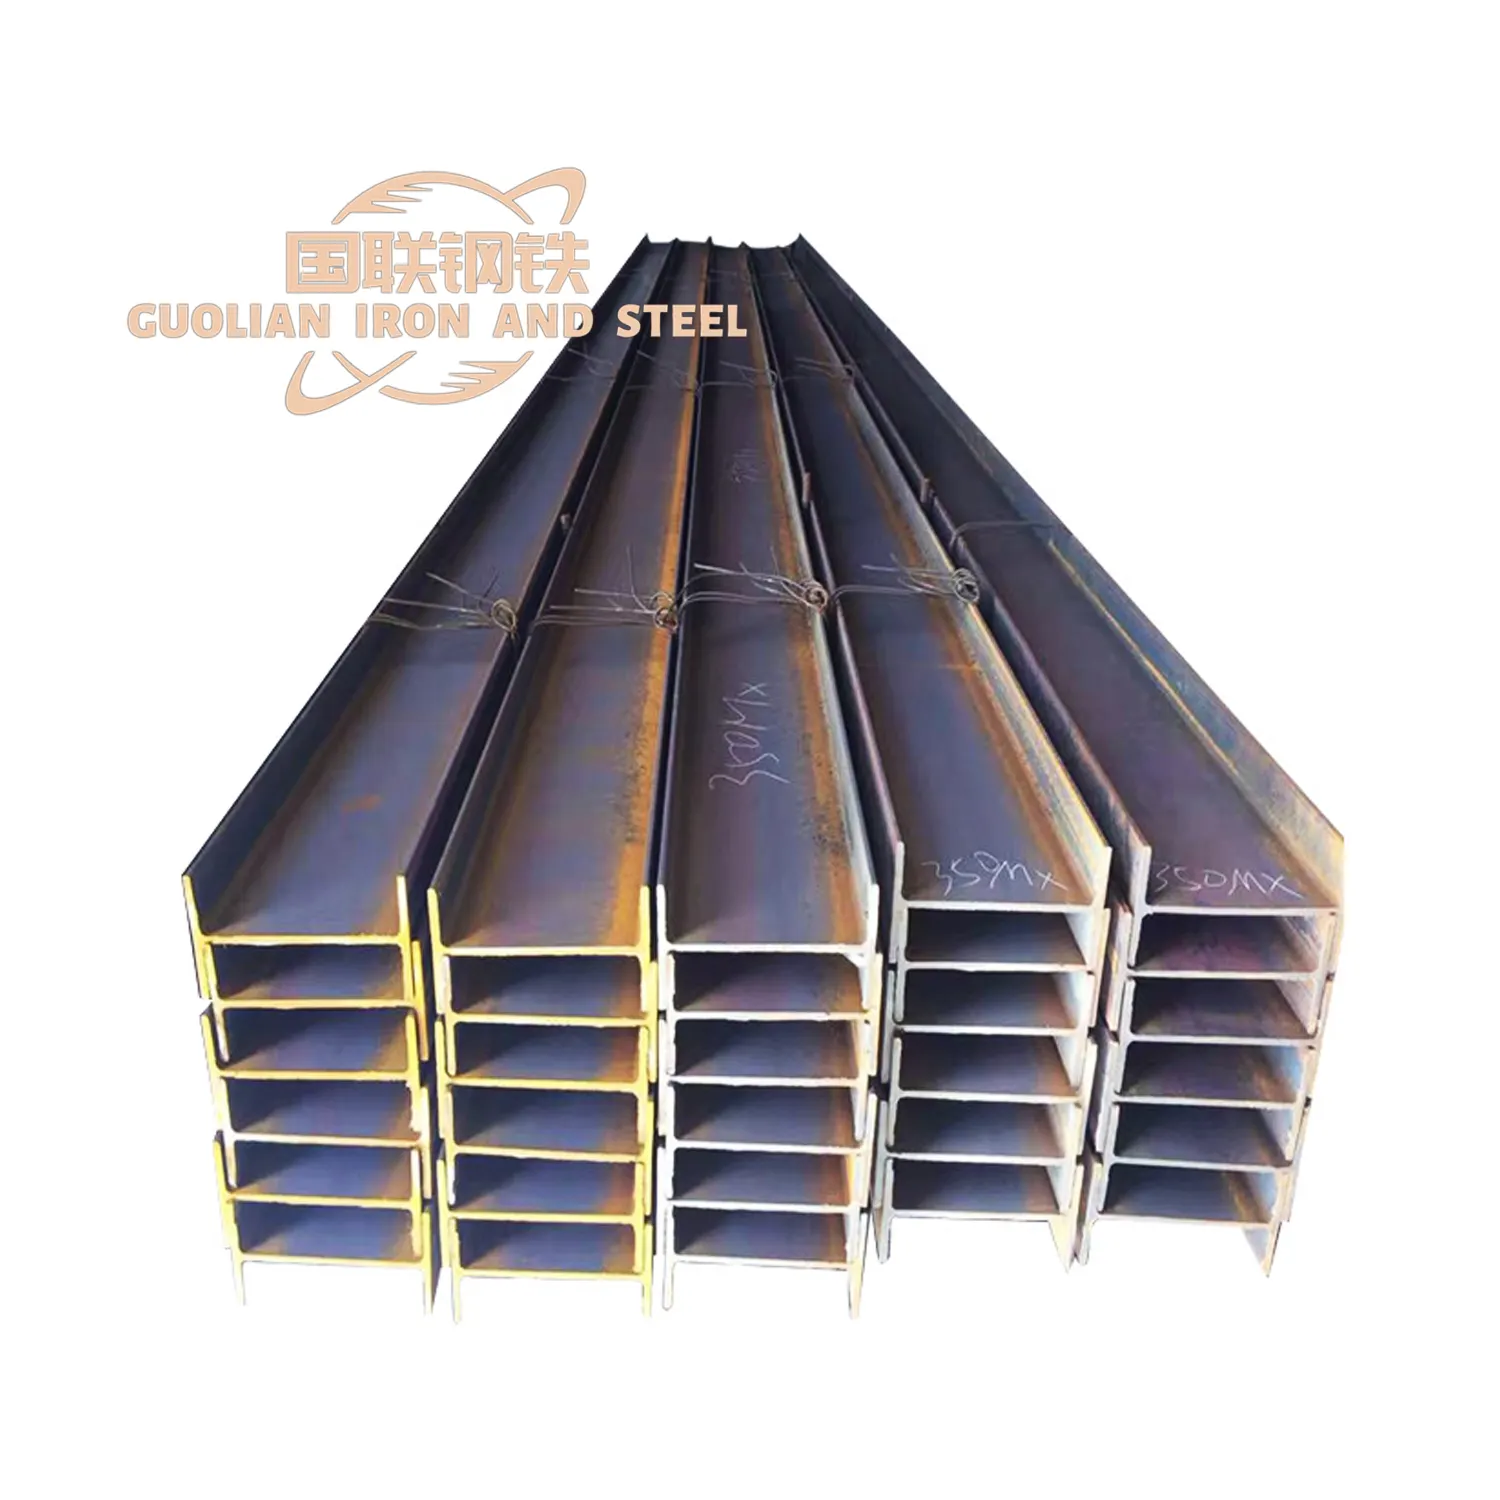 Baja Aloi kualitas tinggi ukuran saluran Ms besi standar produk baja datar lainnya dalam Harga bagus dari produsen